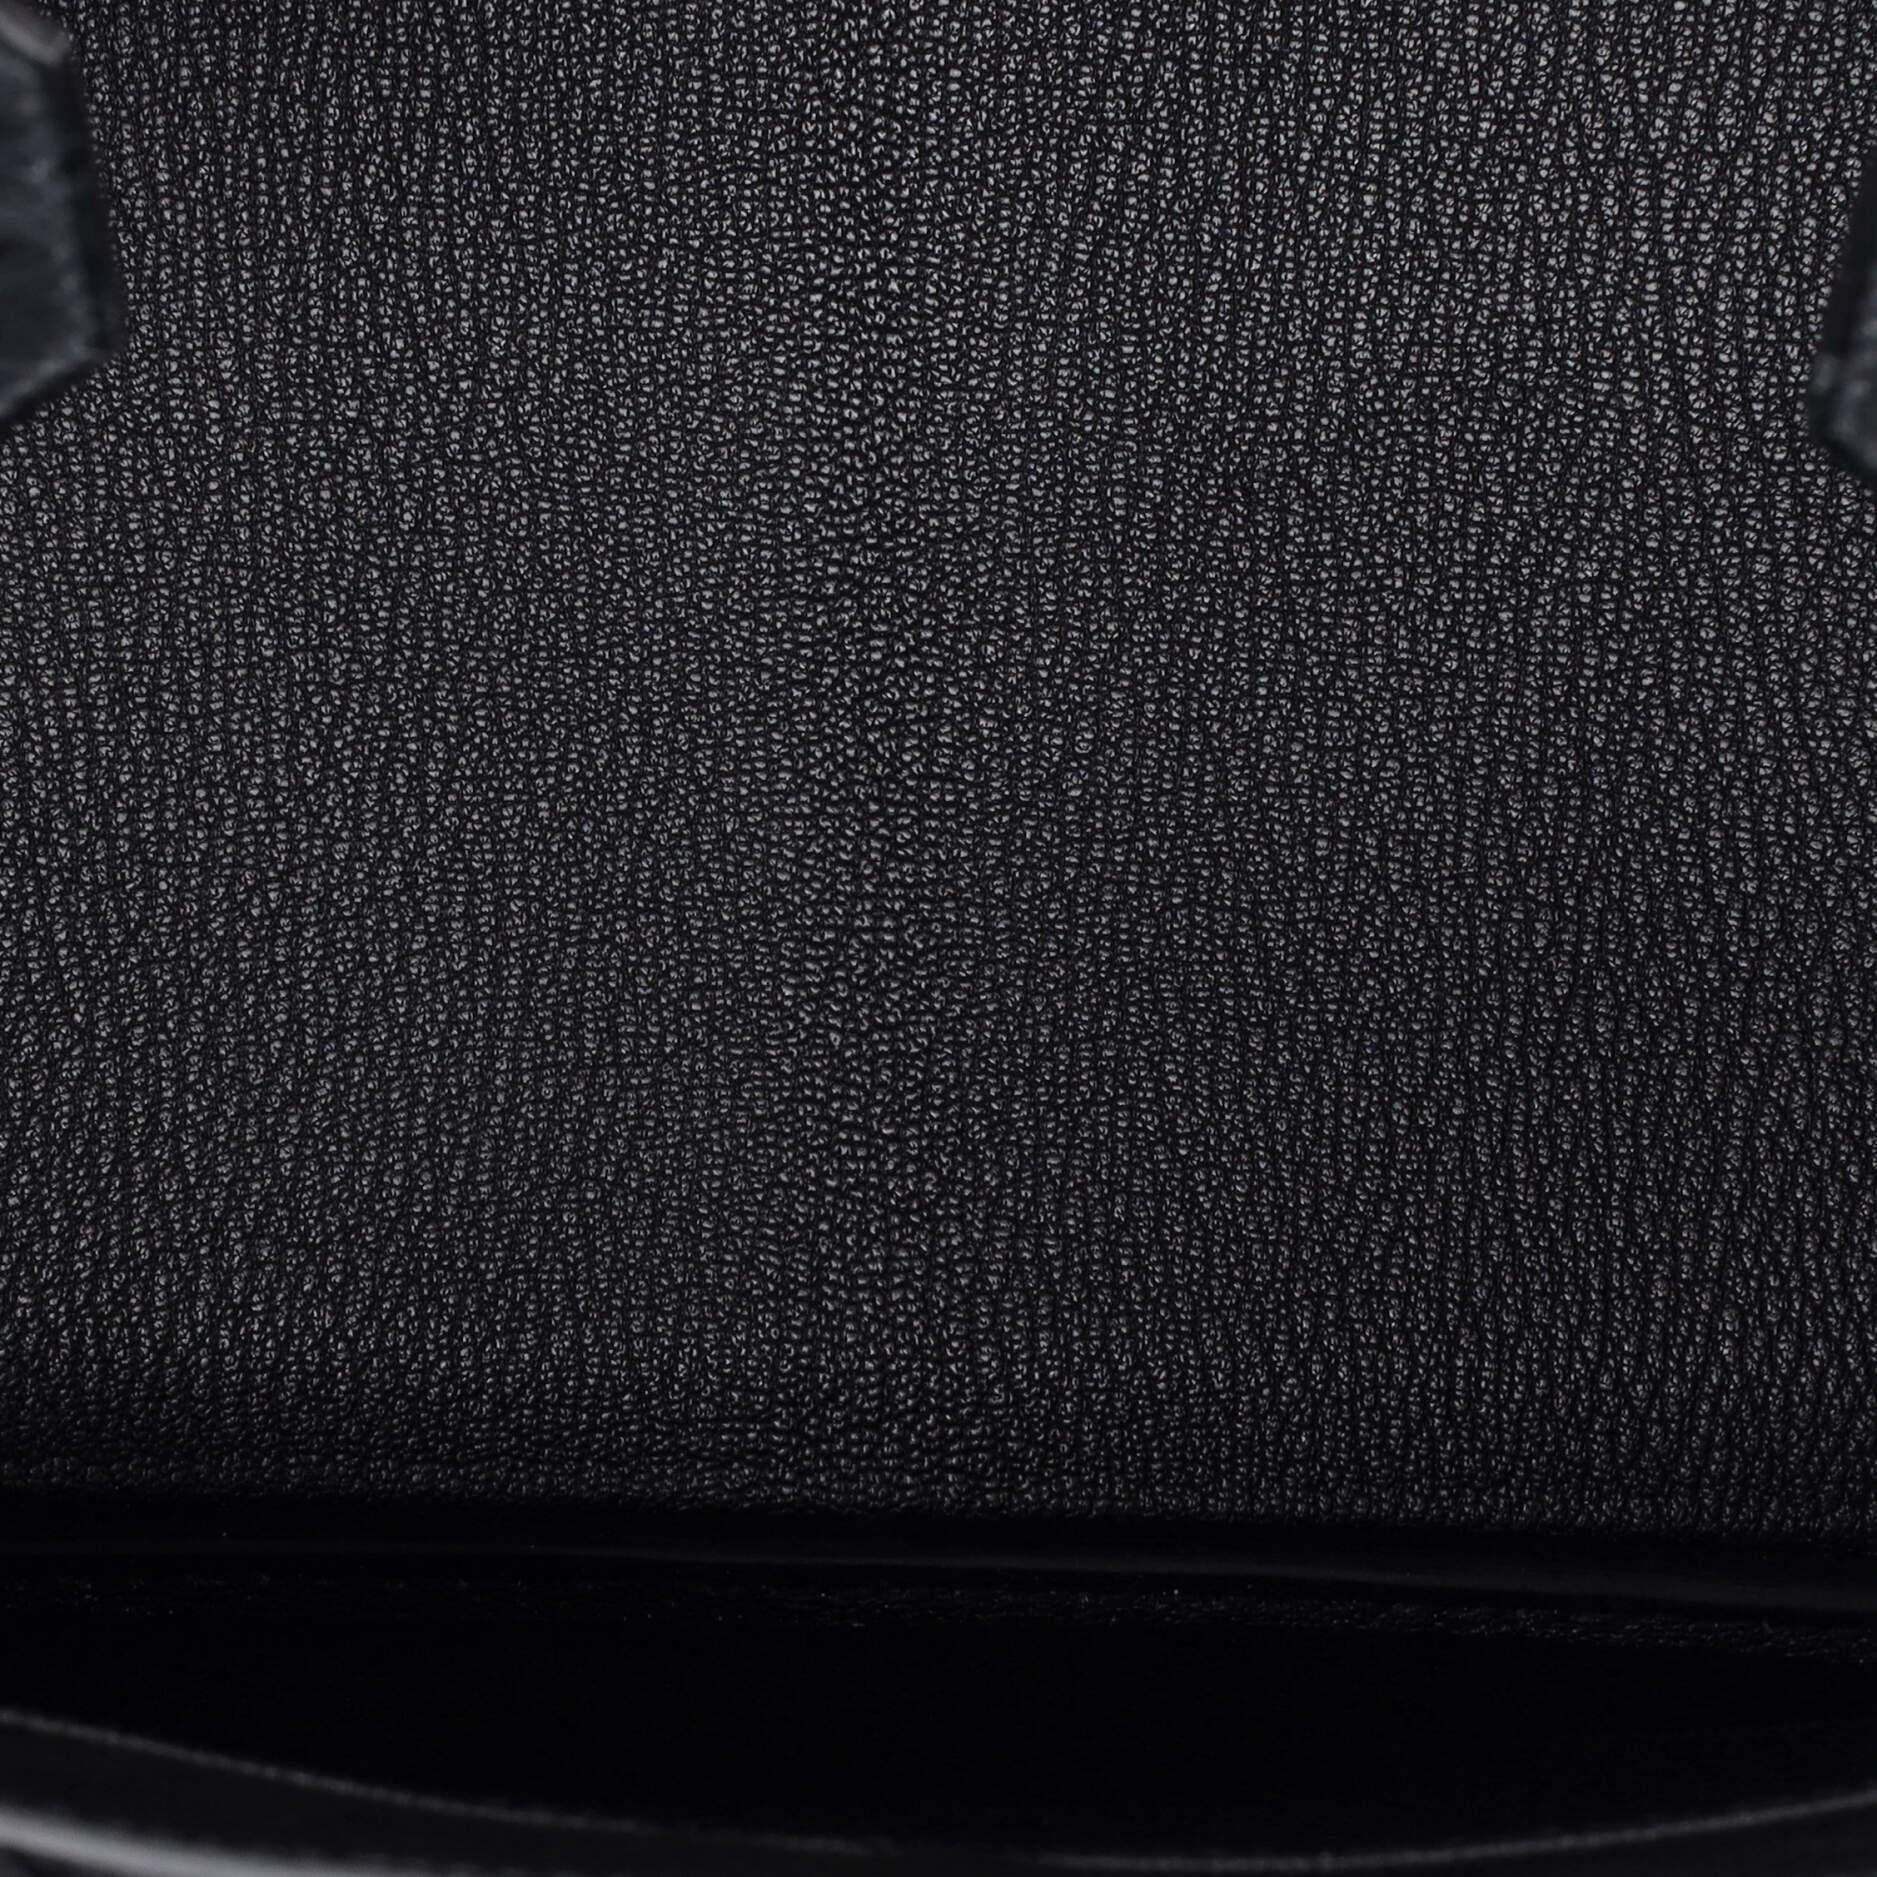 Hermes Birkin Handbag Noir Ostrich with Gold Hardware 30 2